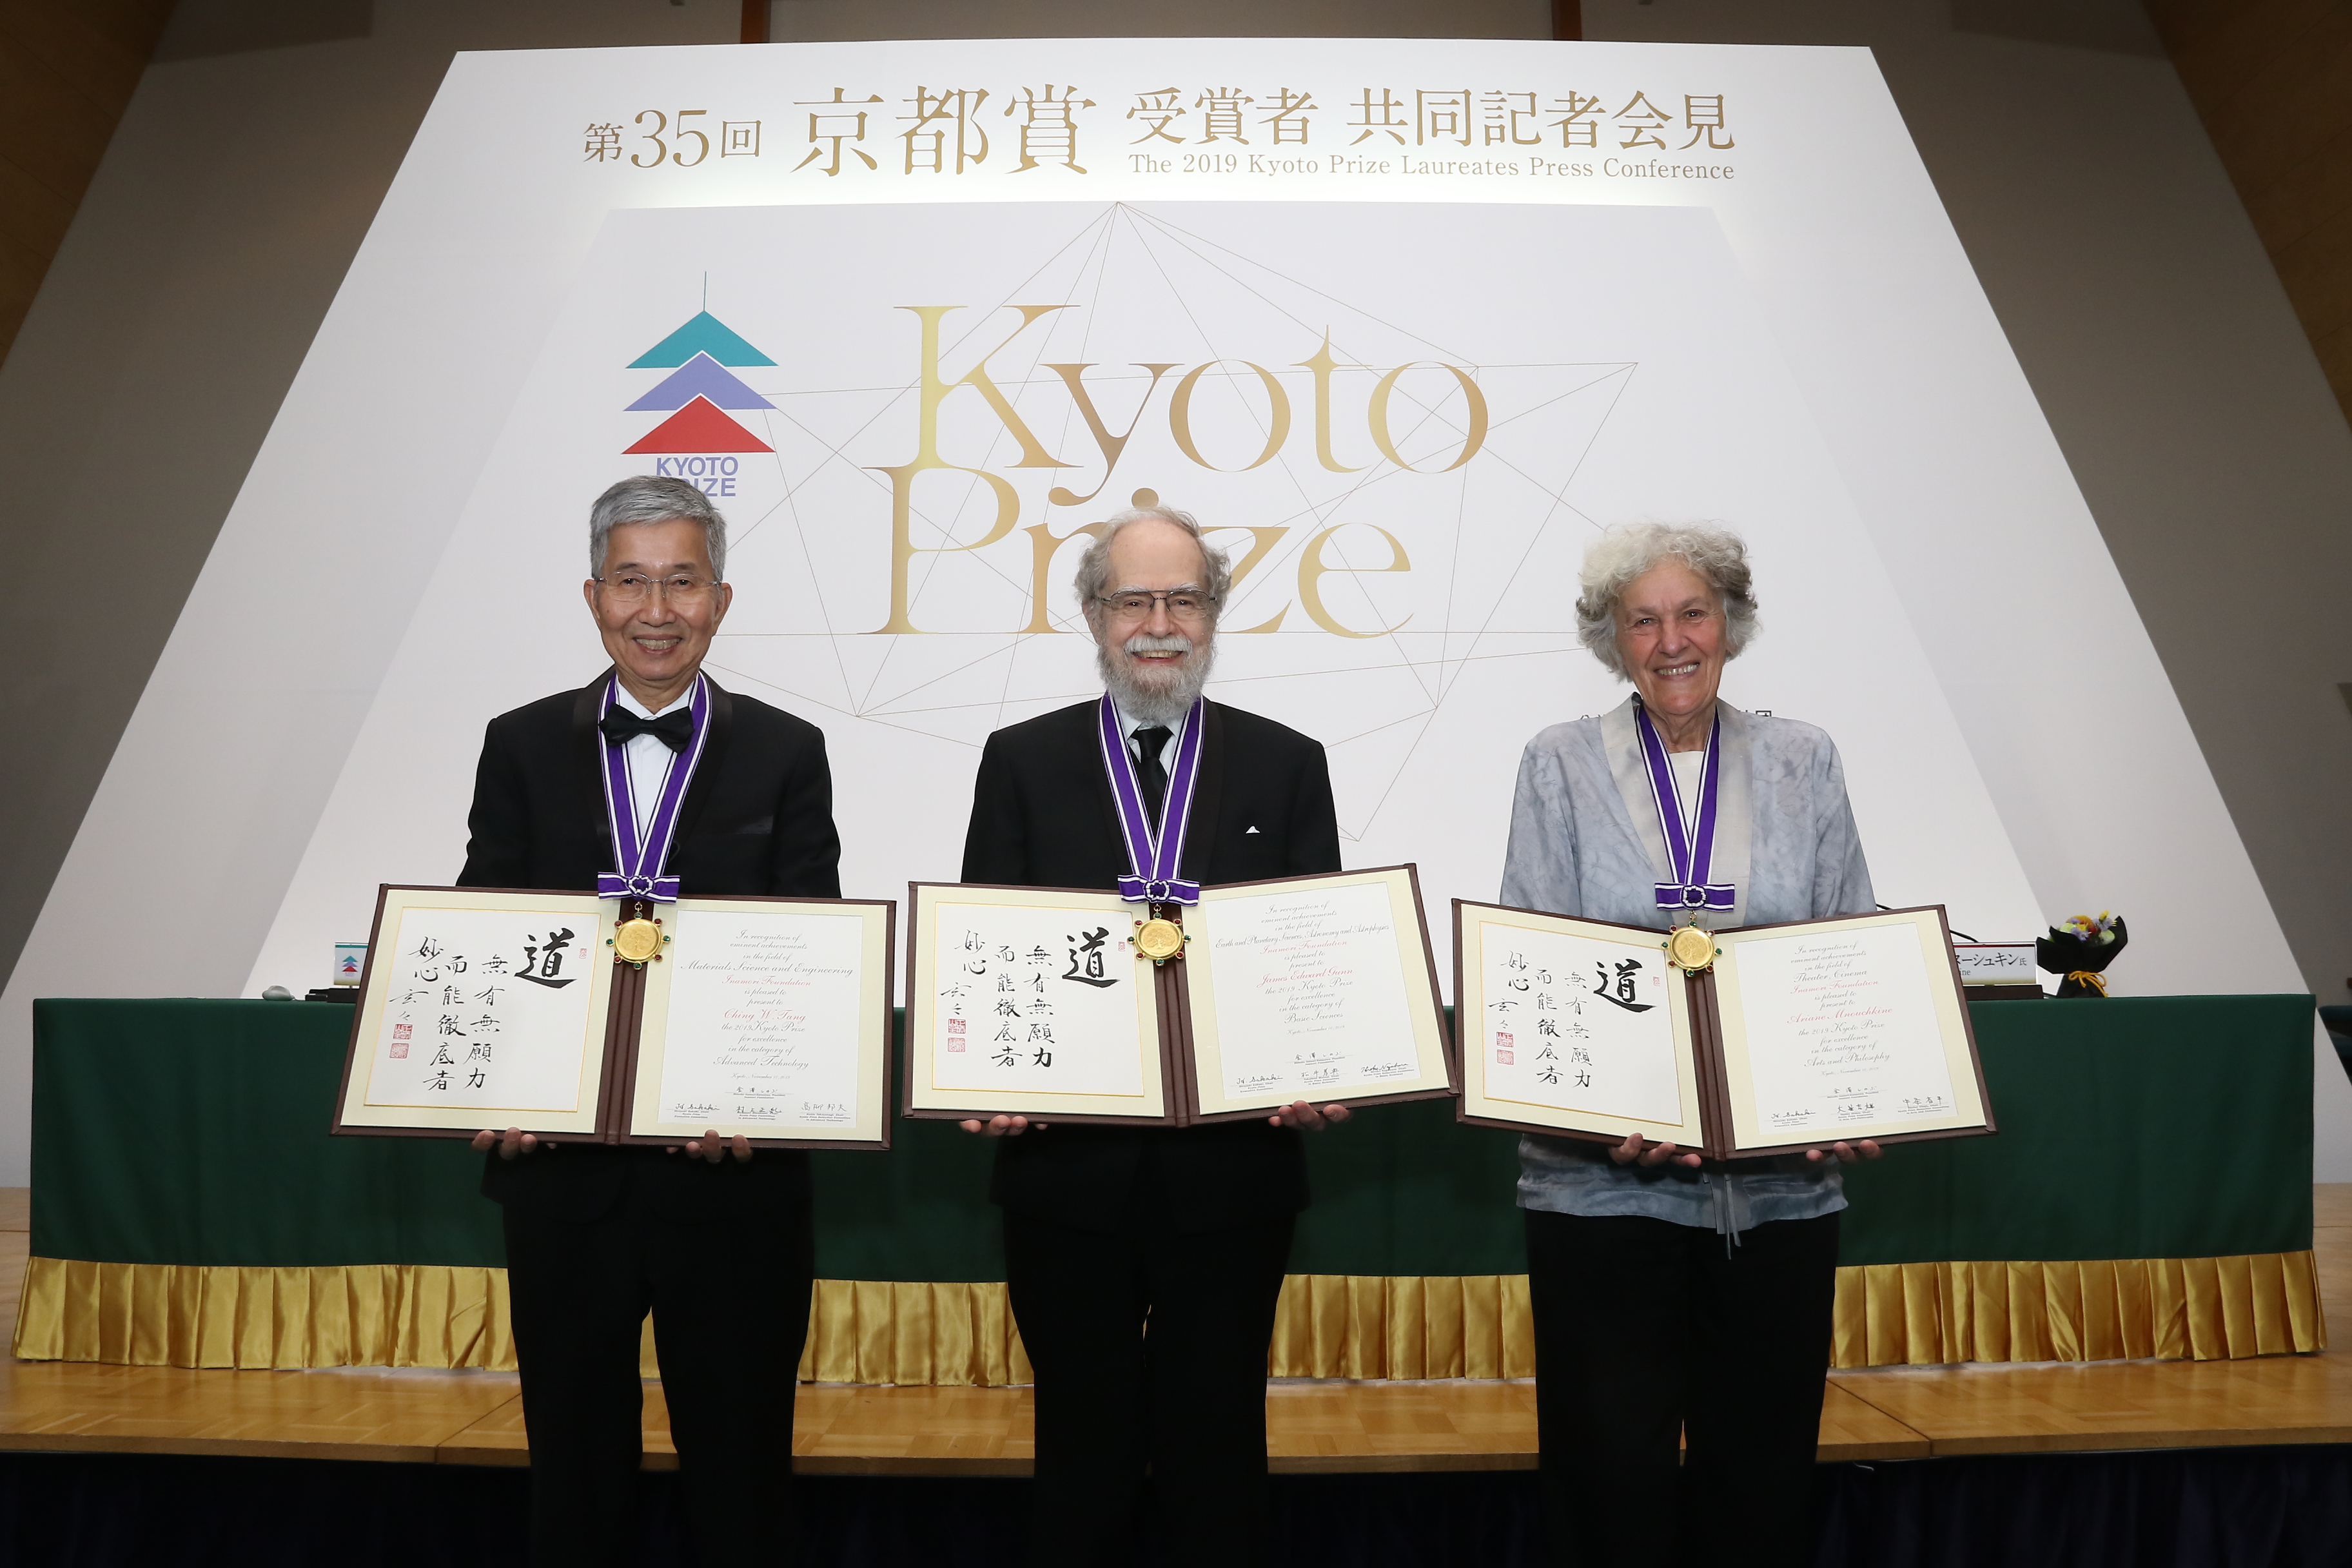 Kyocera_Kyoto Prize_Press conference.JPG